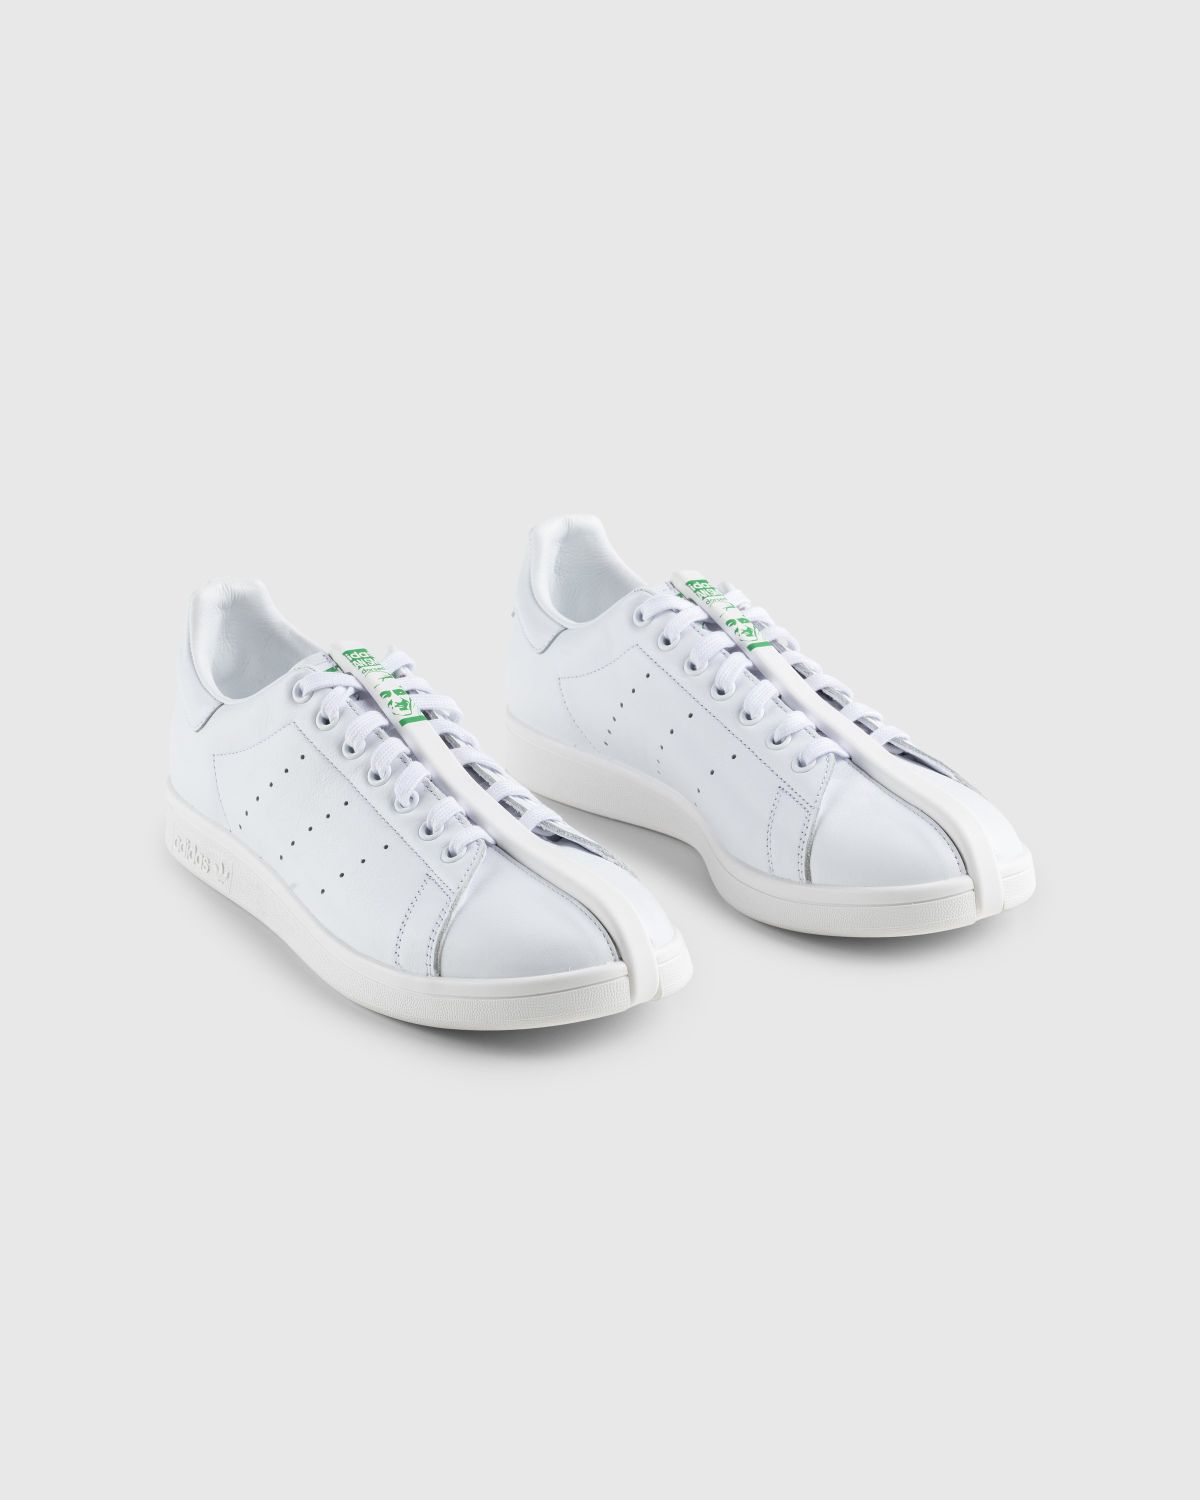 Adidas – CG Split Stan Smith White/Black - Sneakers - White - Image 3